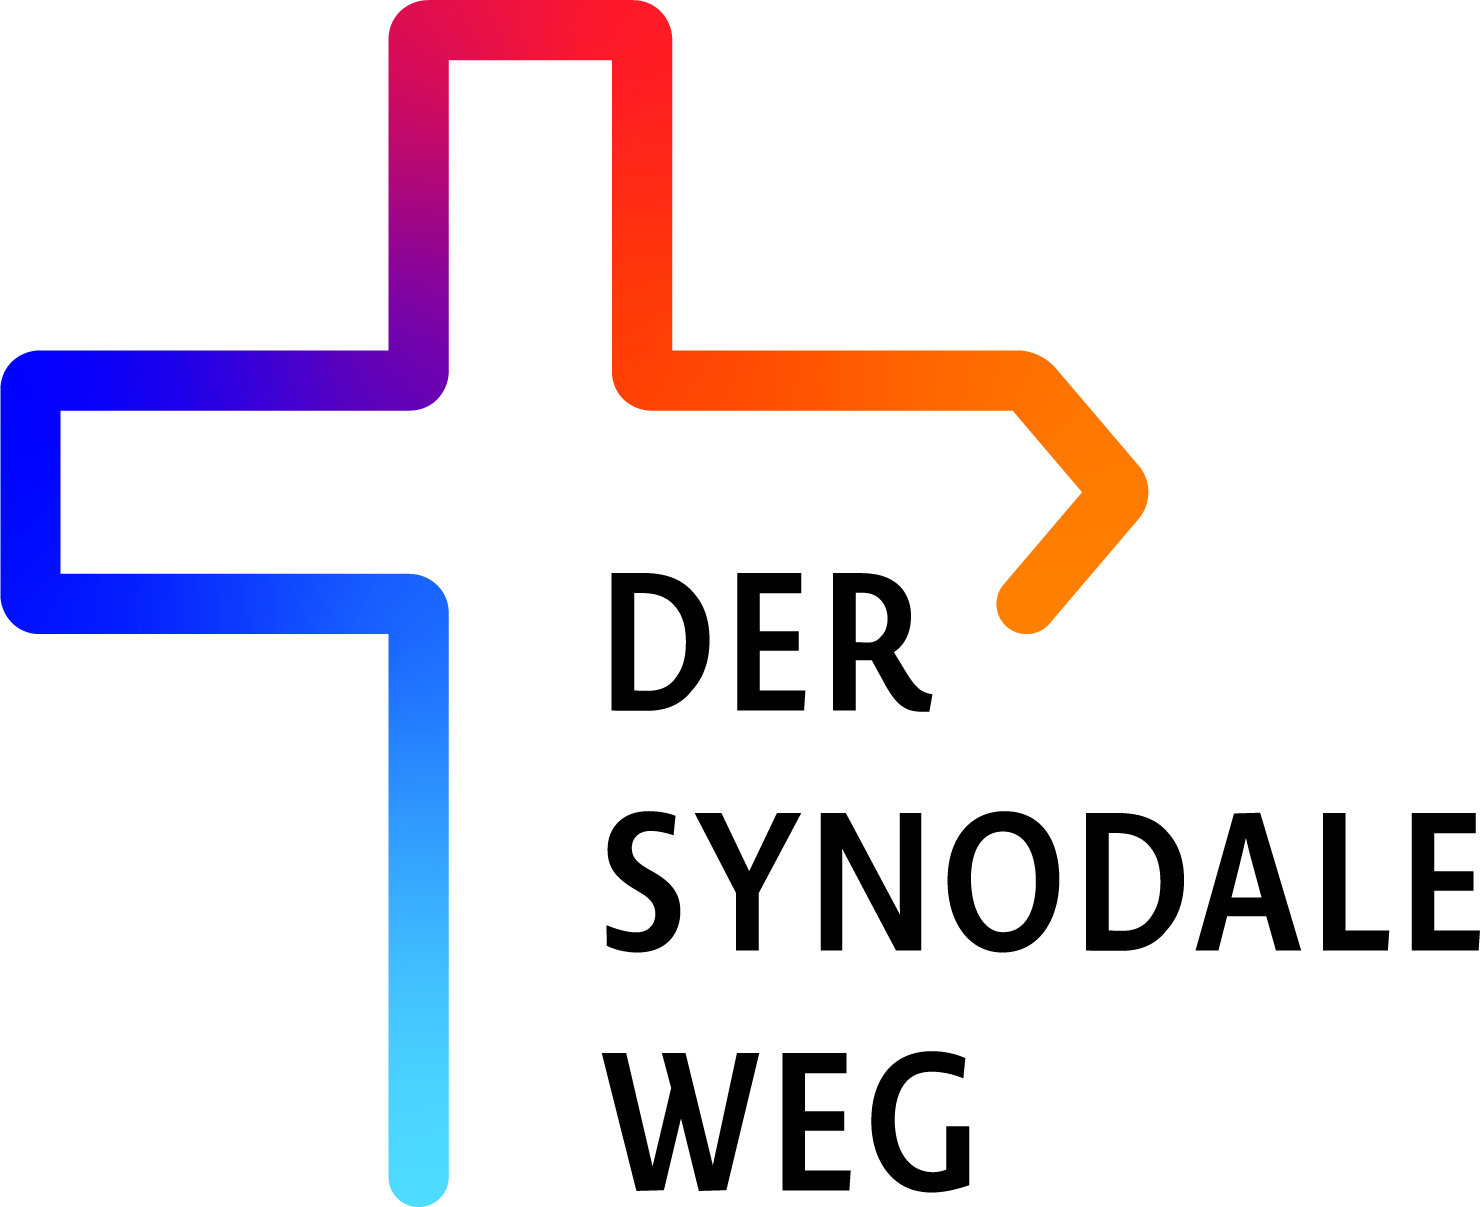 Der Synodaler Weg (c) Deutsche Bischofskonferenz